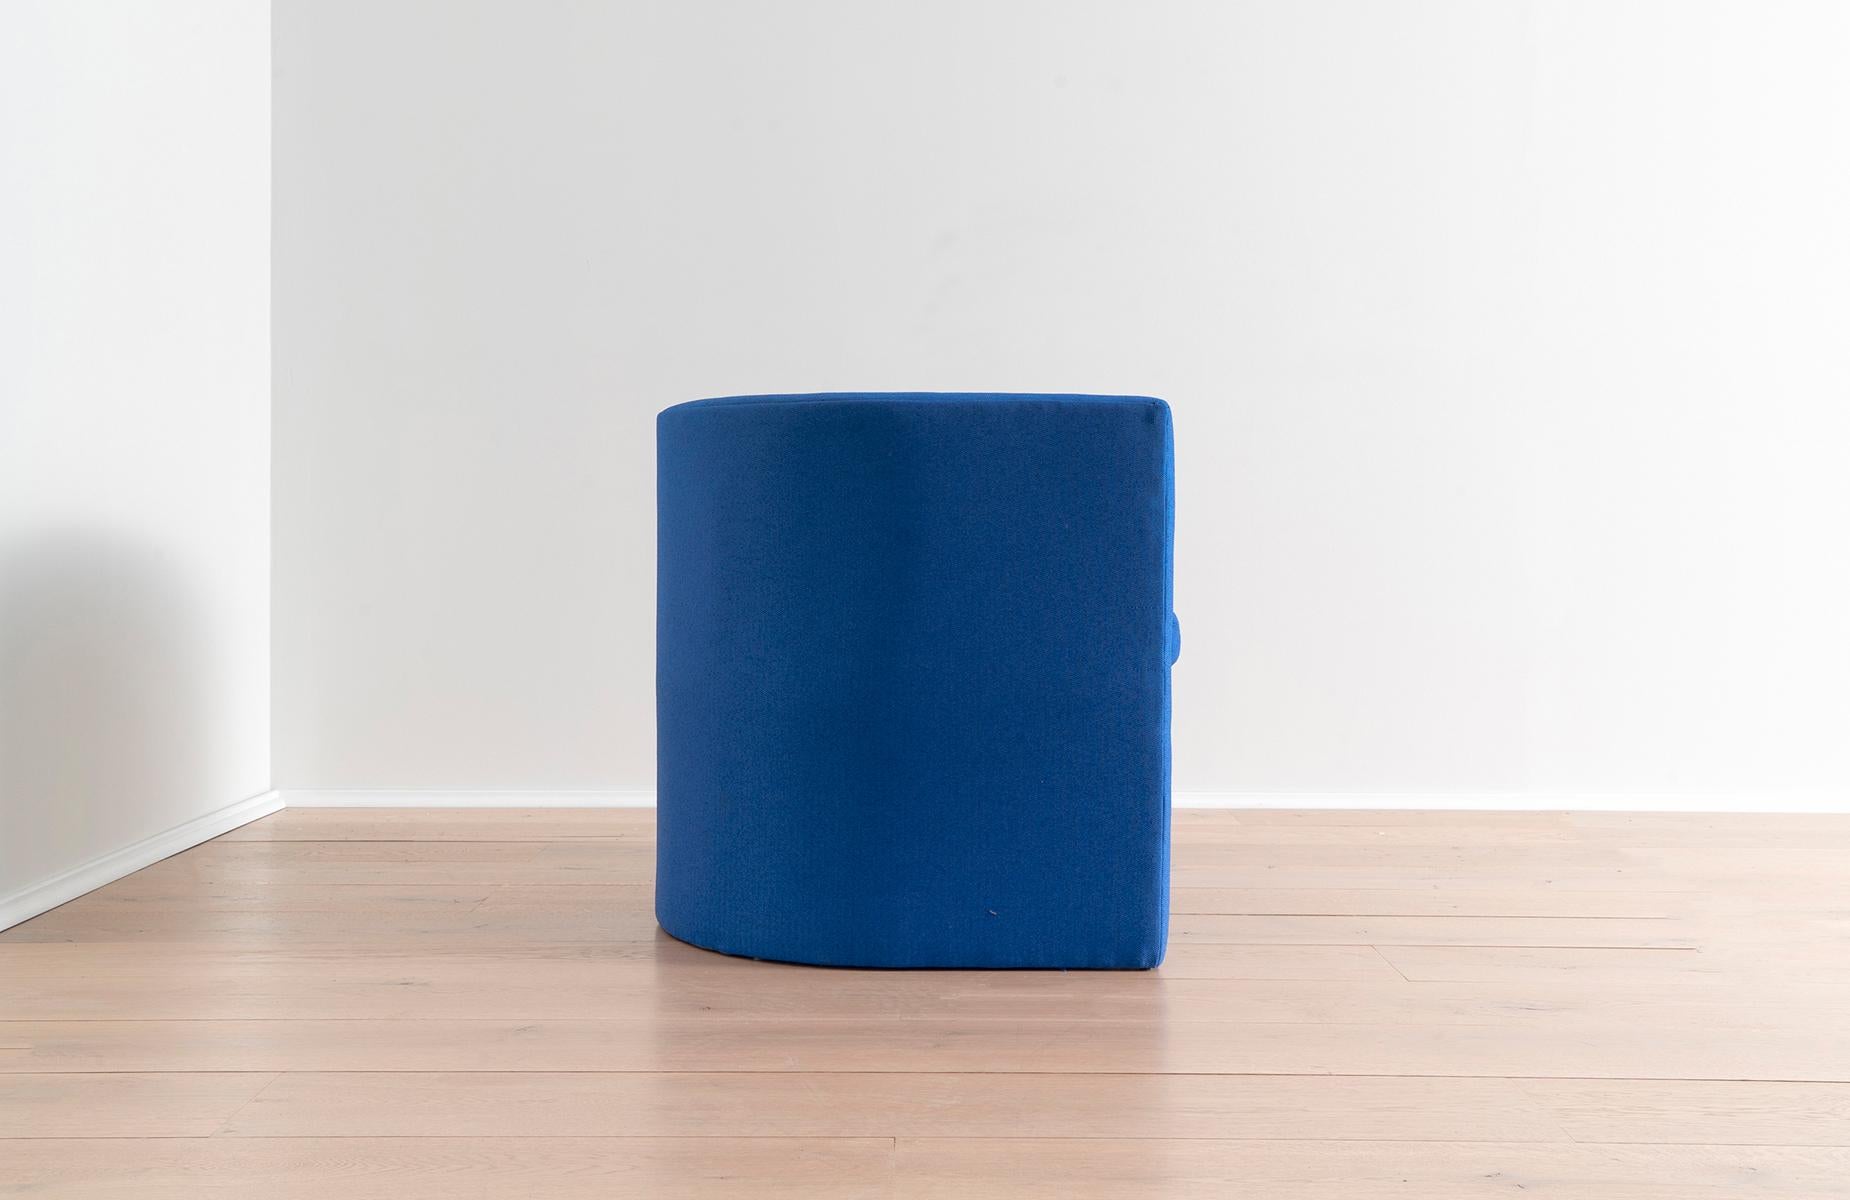 Incorporez cette chaise longue verte rembourrée dans votre salon, ou comme ajout audacieux à une table à manger ou un bureau. Simple, frappante et faussement confortable malgré son profil élancé, cette chaise allie l'appréciation d'un design élégant